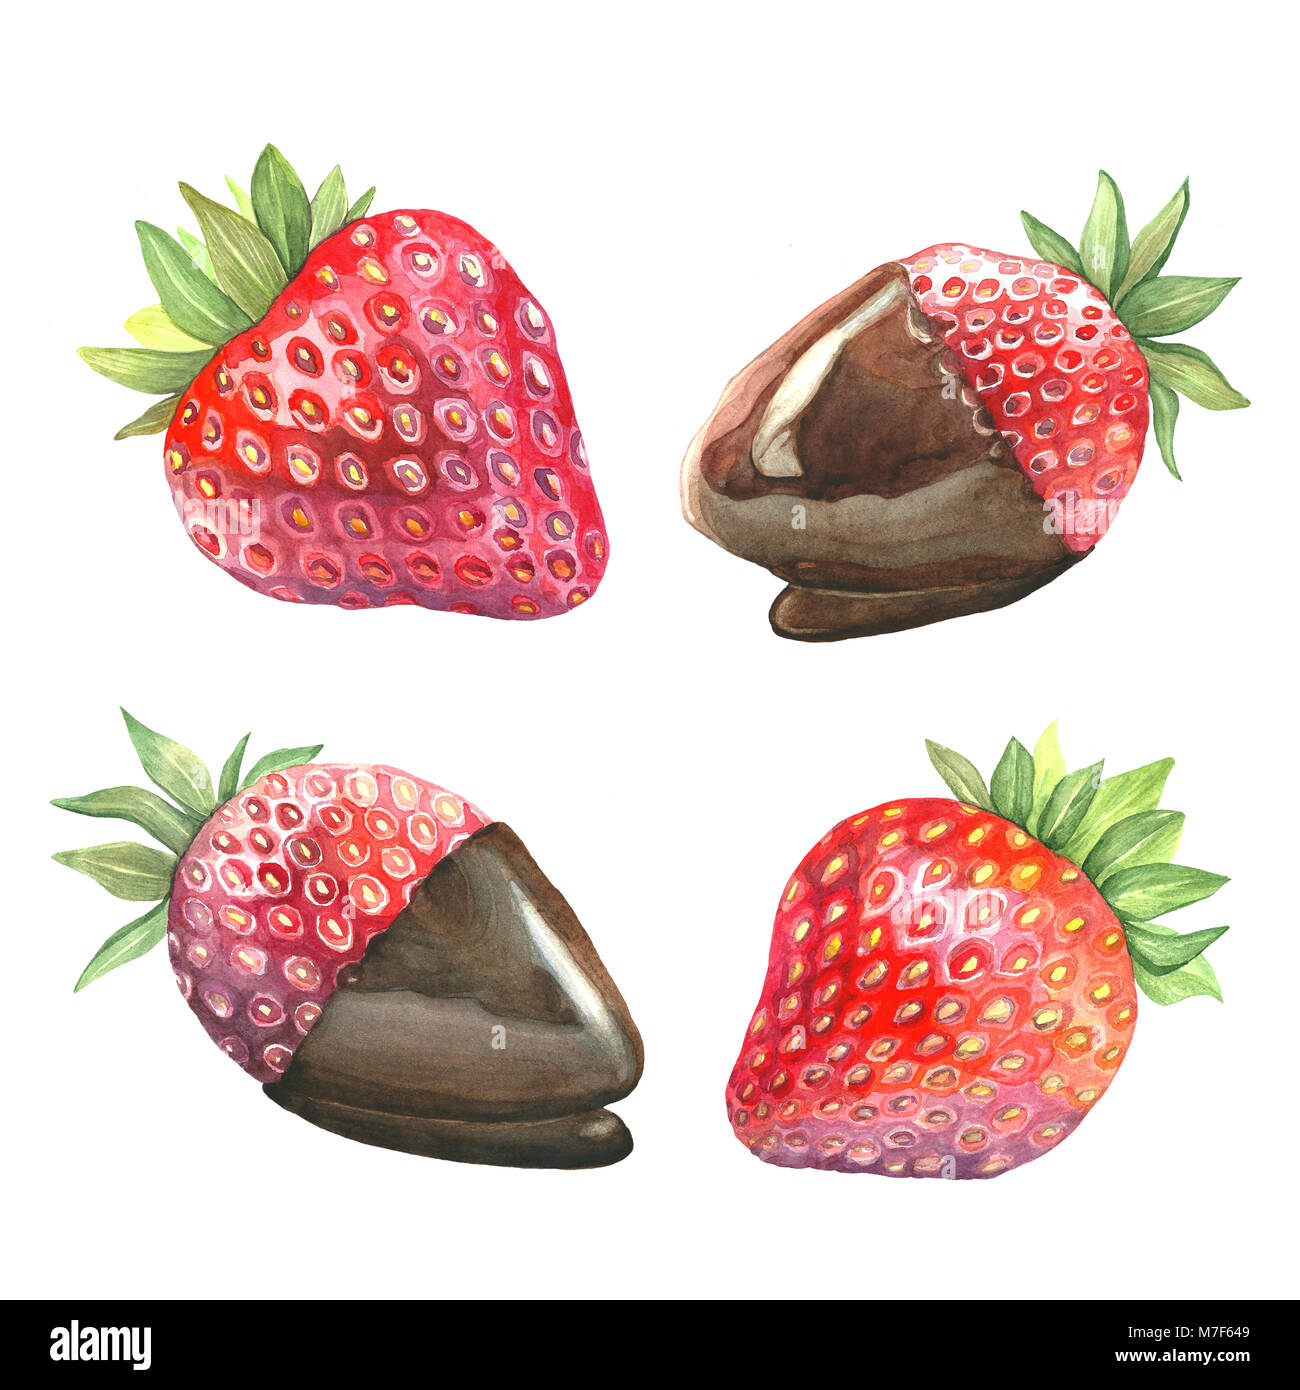 Eine Reihe von Aquarell Abbildungen eines reifen Beeren. Dessert Erdbeeren in Schokolade. Isolierte Bild der Früchte auf weißem Hintergrund. Stockfoto